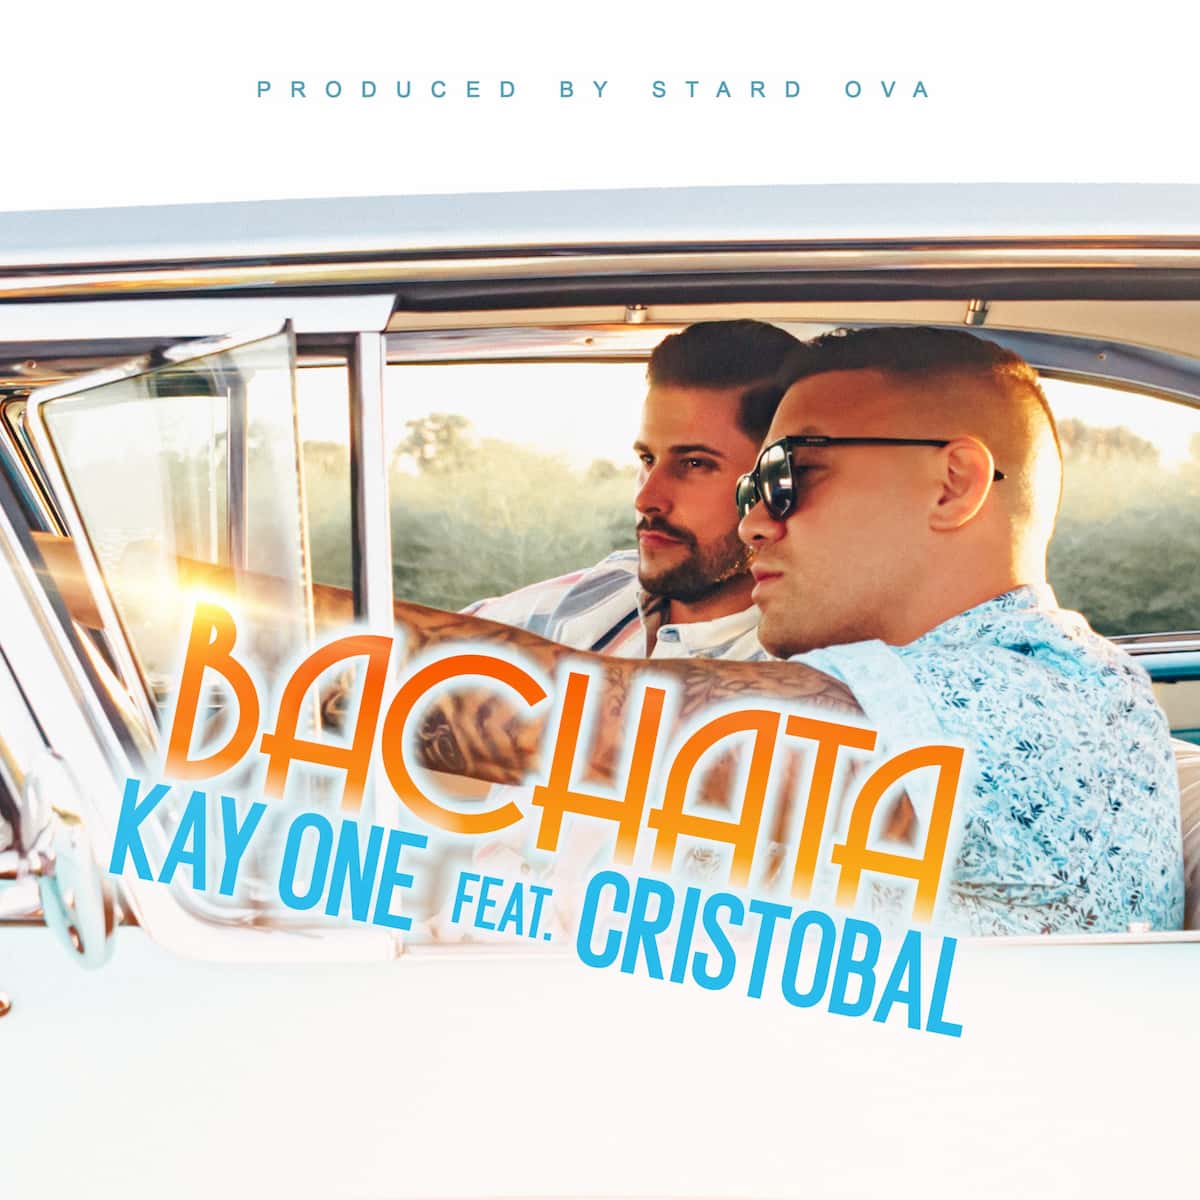 Kay One ft. Cristobal - Neuer Bachata-Song veröffentlicht